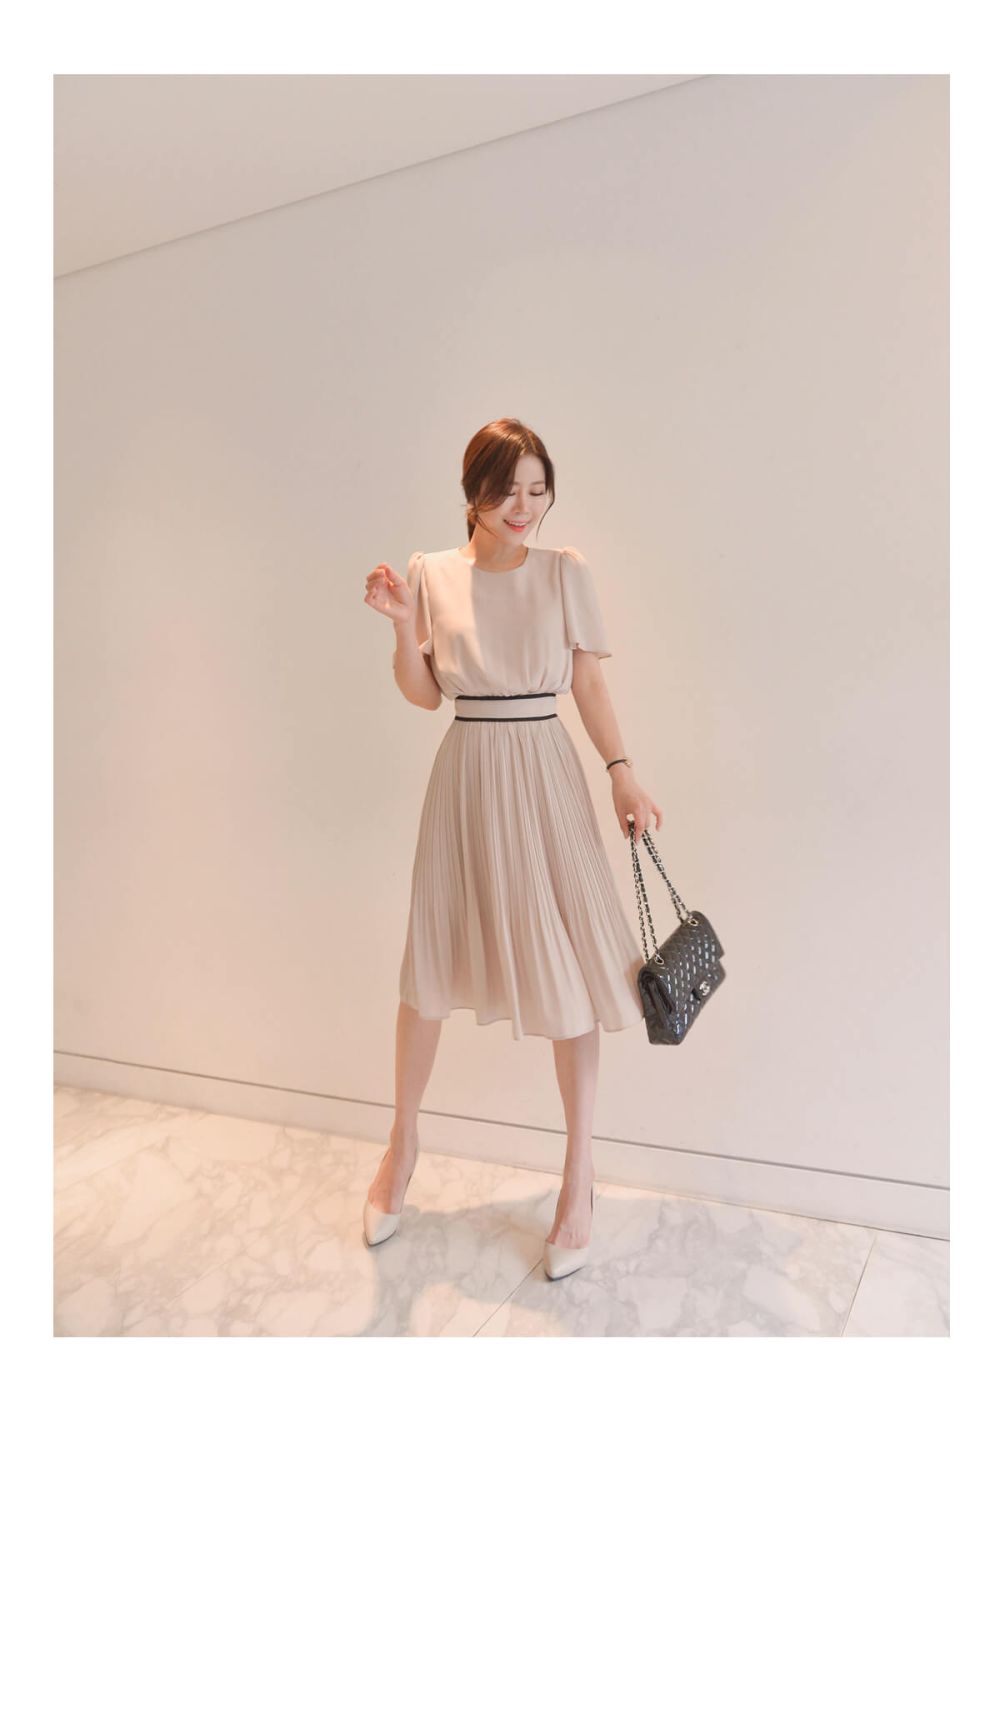 正韓 古典簡單設計連身裙